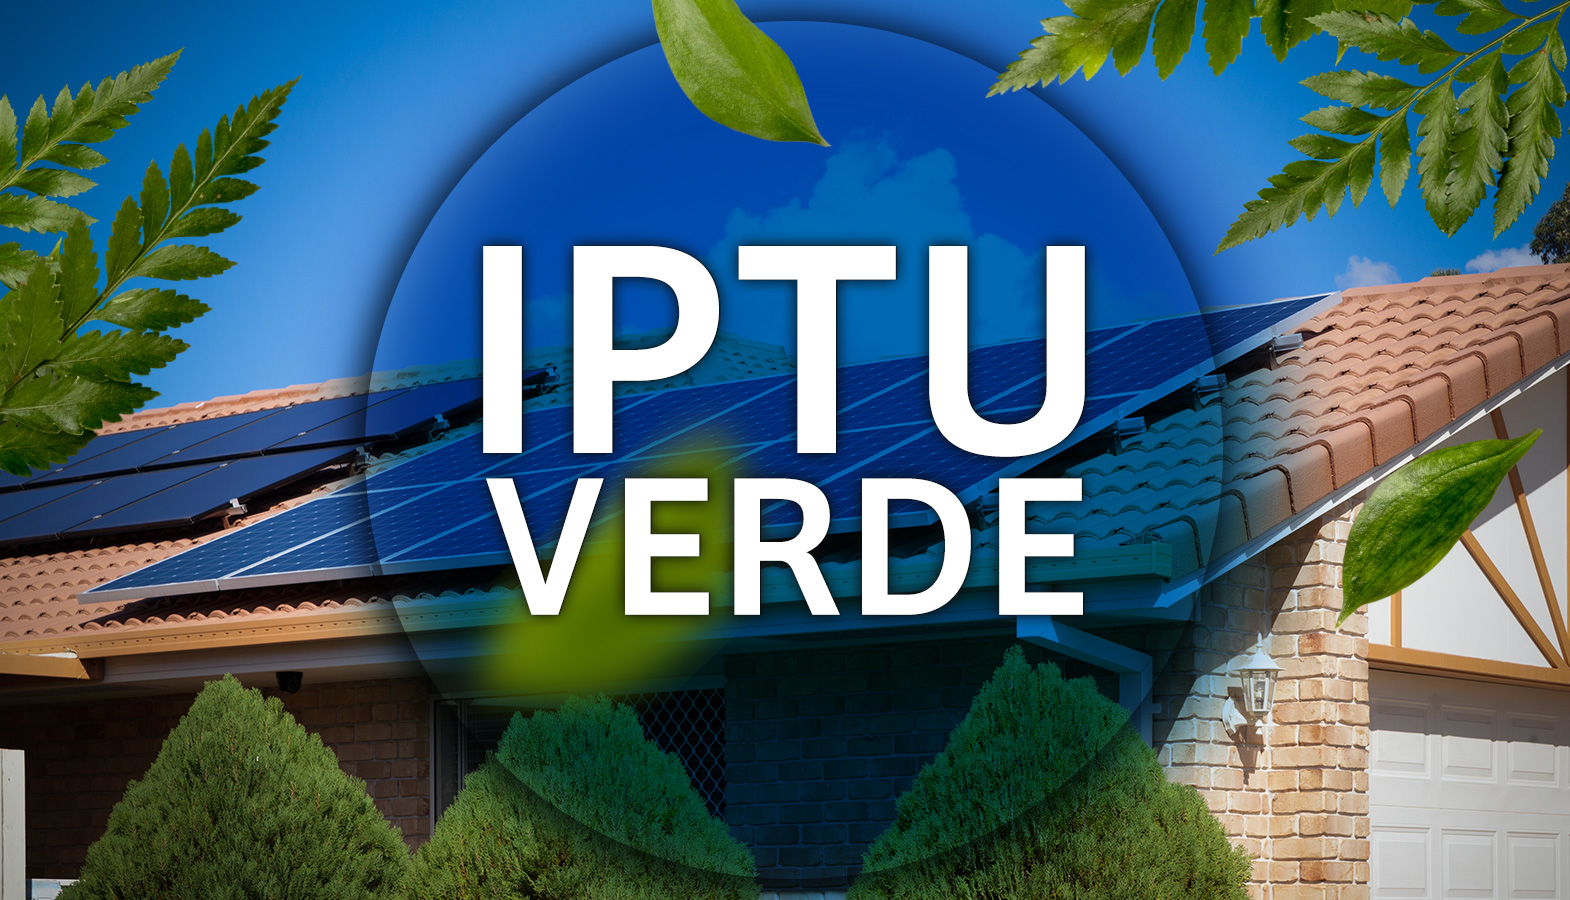 IPTU verde com energia solar